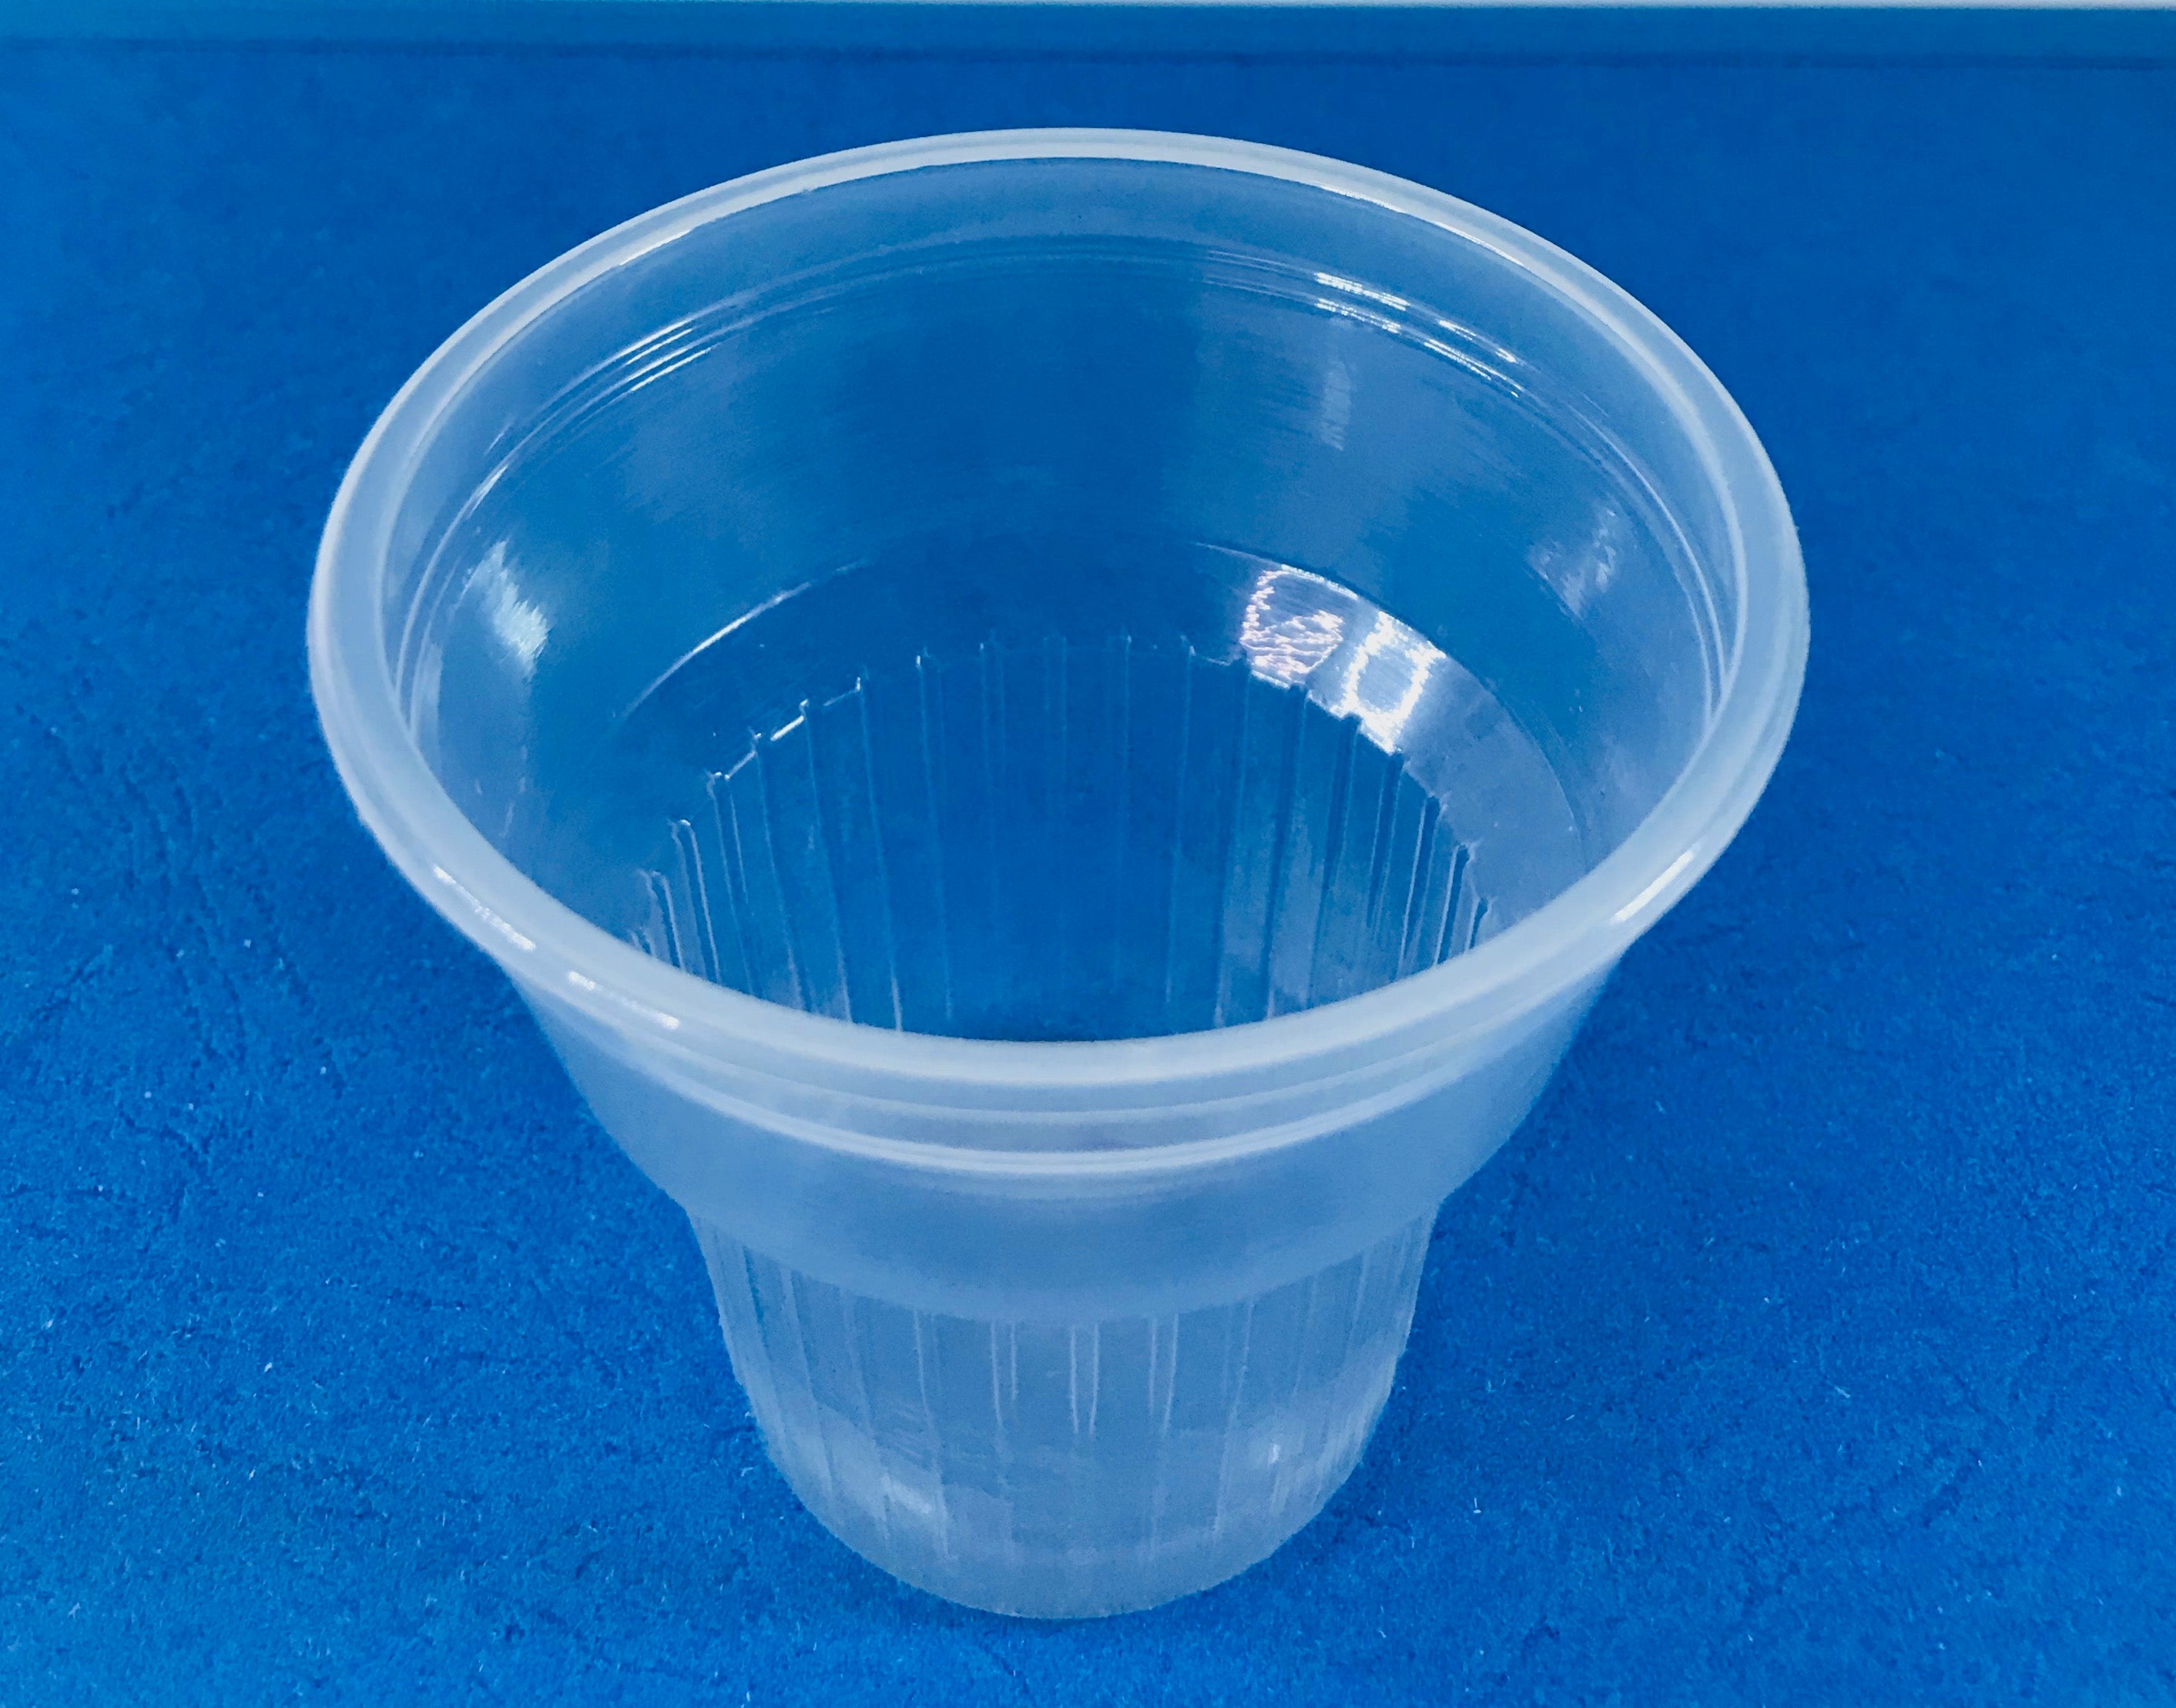 White Plastic Cup, 3.5 oz, 50 pcs